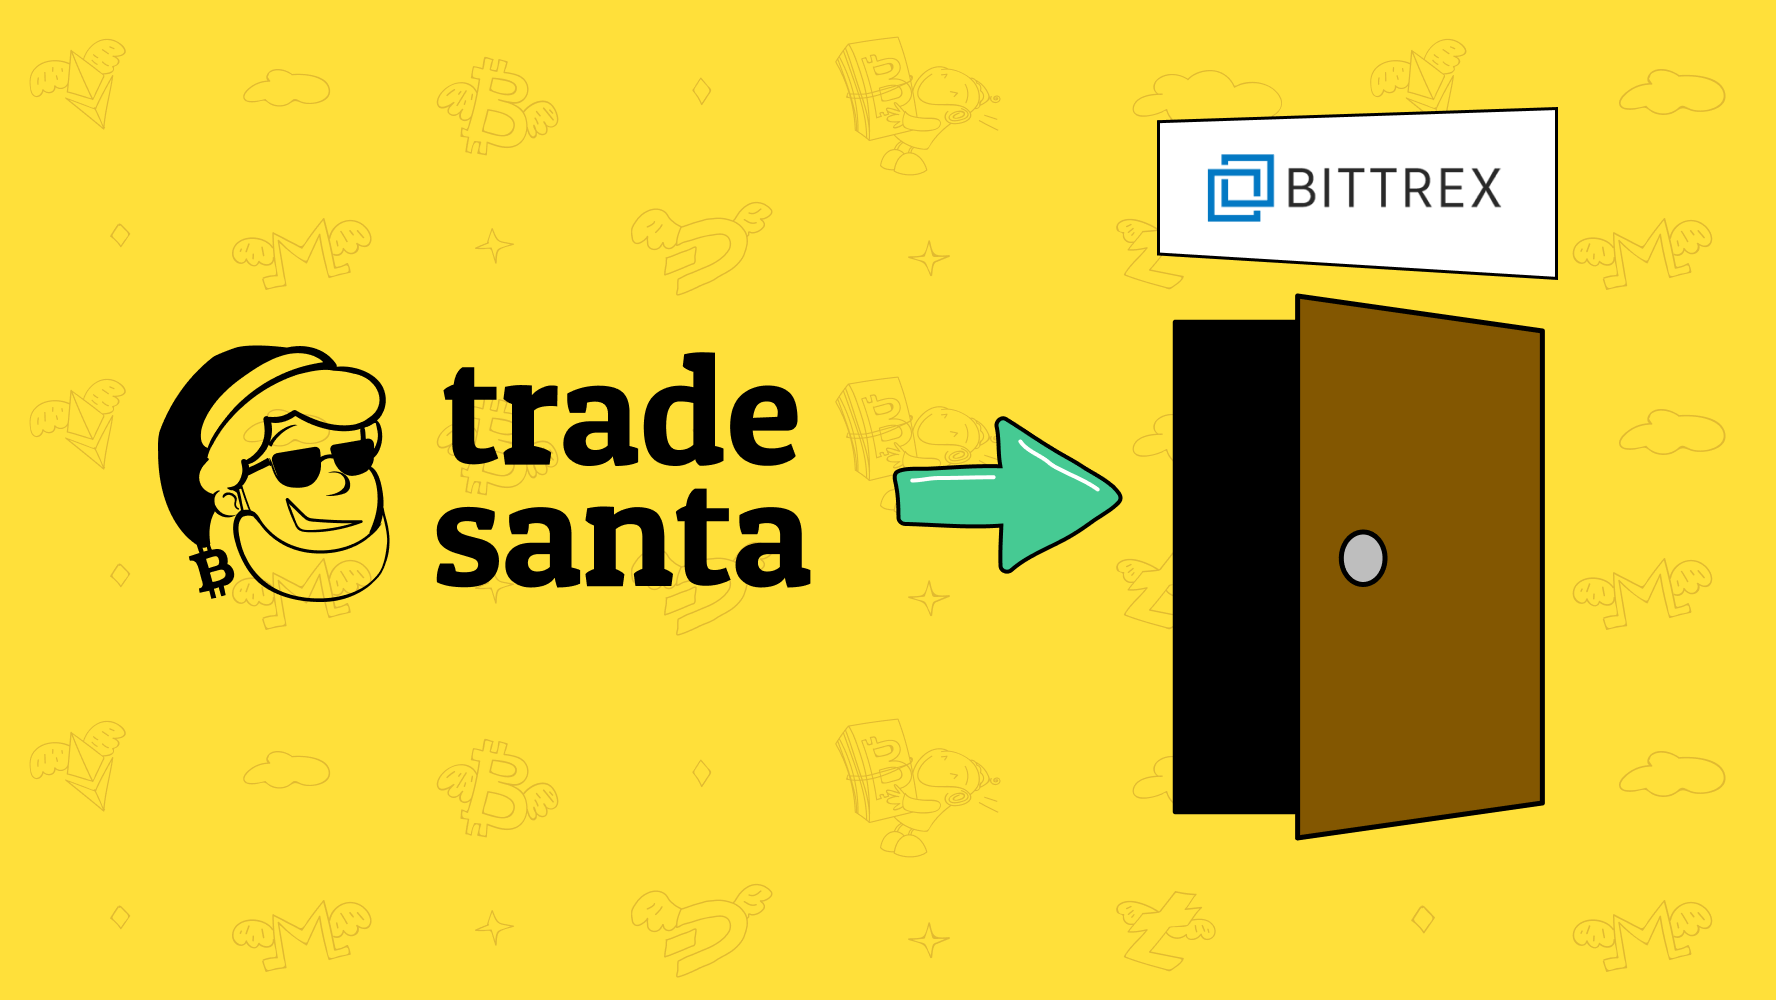 bittrex trading bot miglior bitcoin software miner 2021